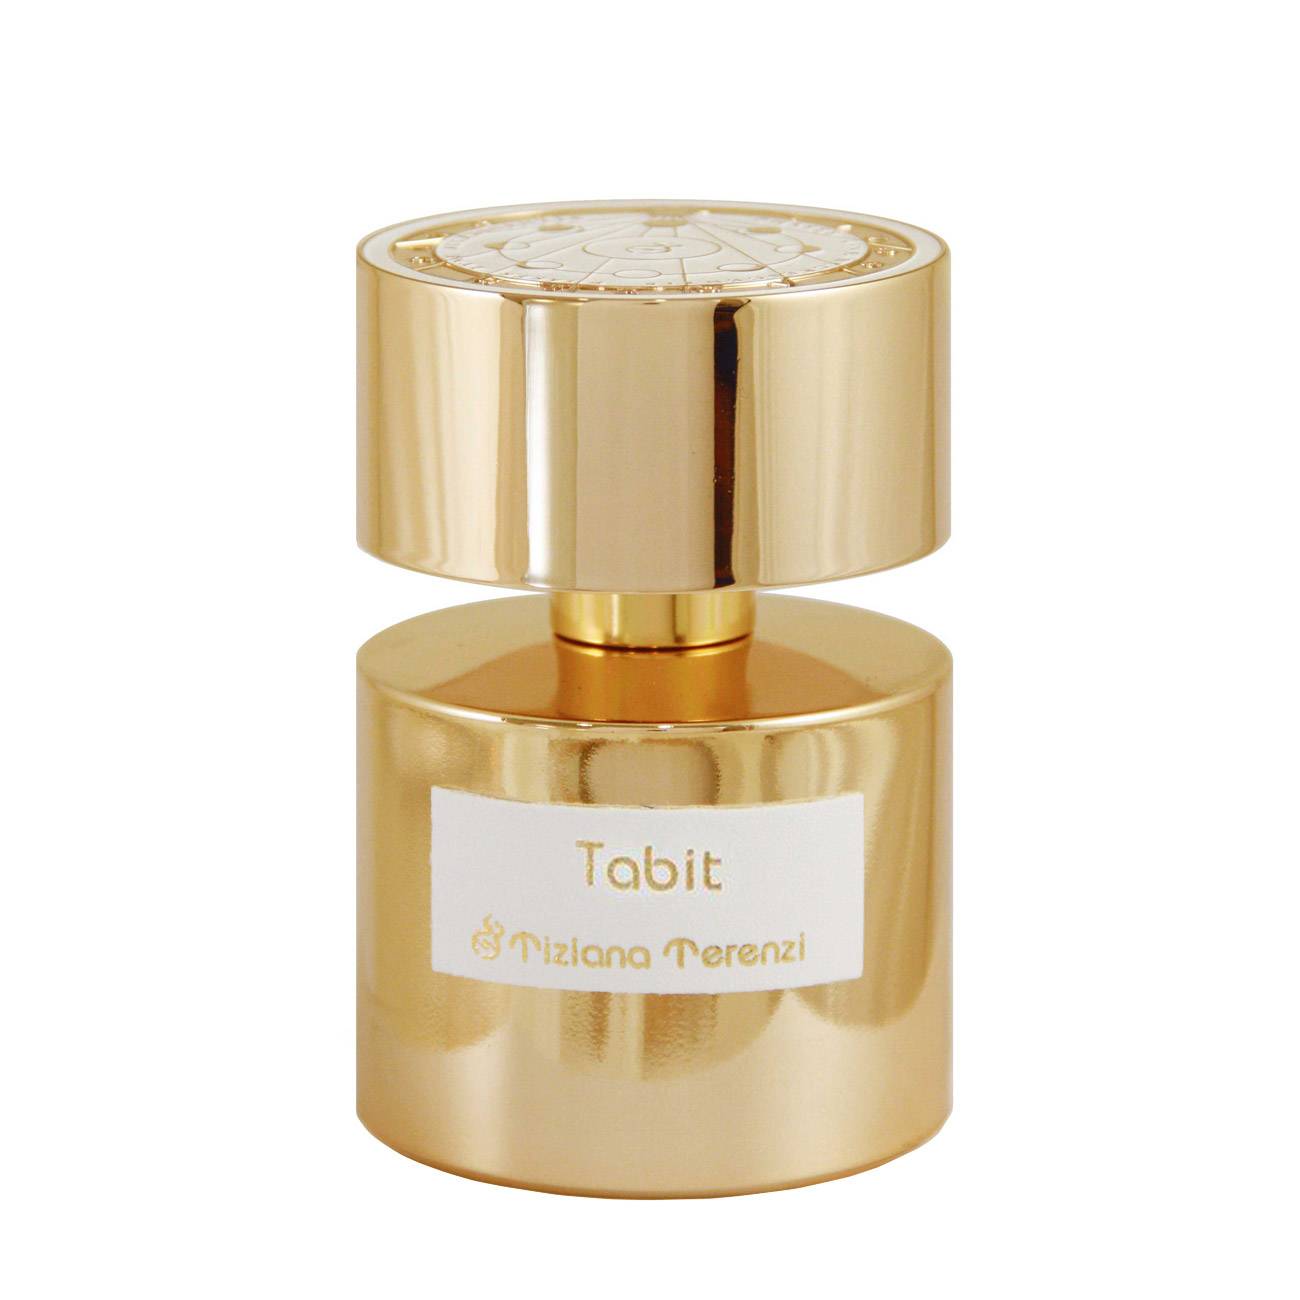 Parfum de niche Tiziana Terenzi TABIT 100ml cu comanda online